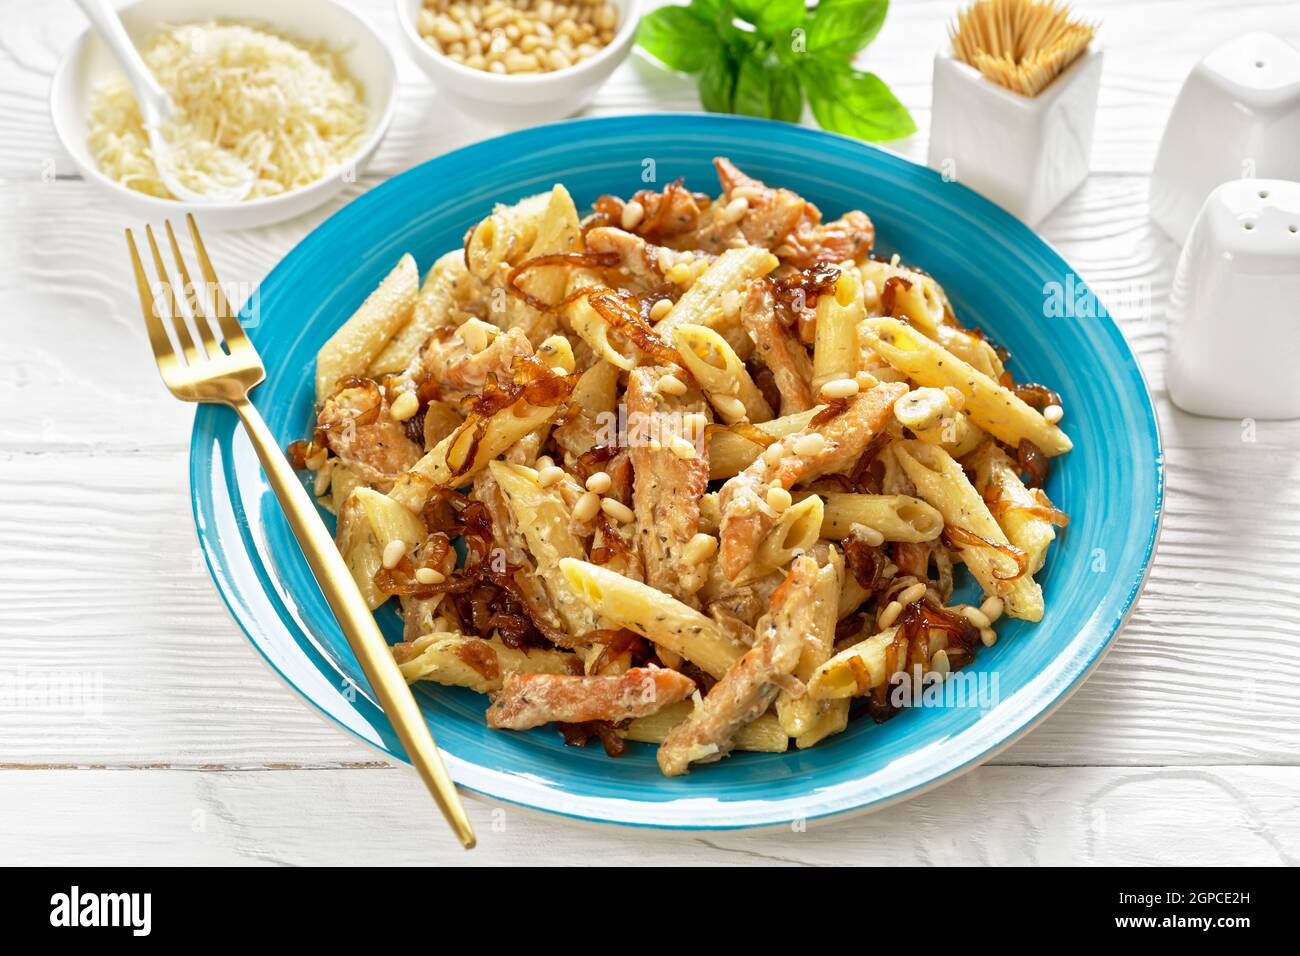 penne de pâtes alfredo de poulet à l'oignon caramélisé arrosé de pignons de pin et de parmesan râpé sur une assiette bleue sur une table en bois blanc Banque D'Images